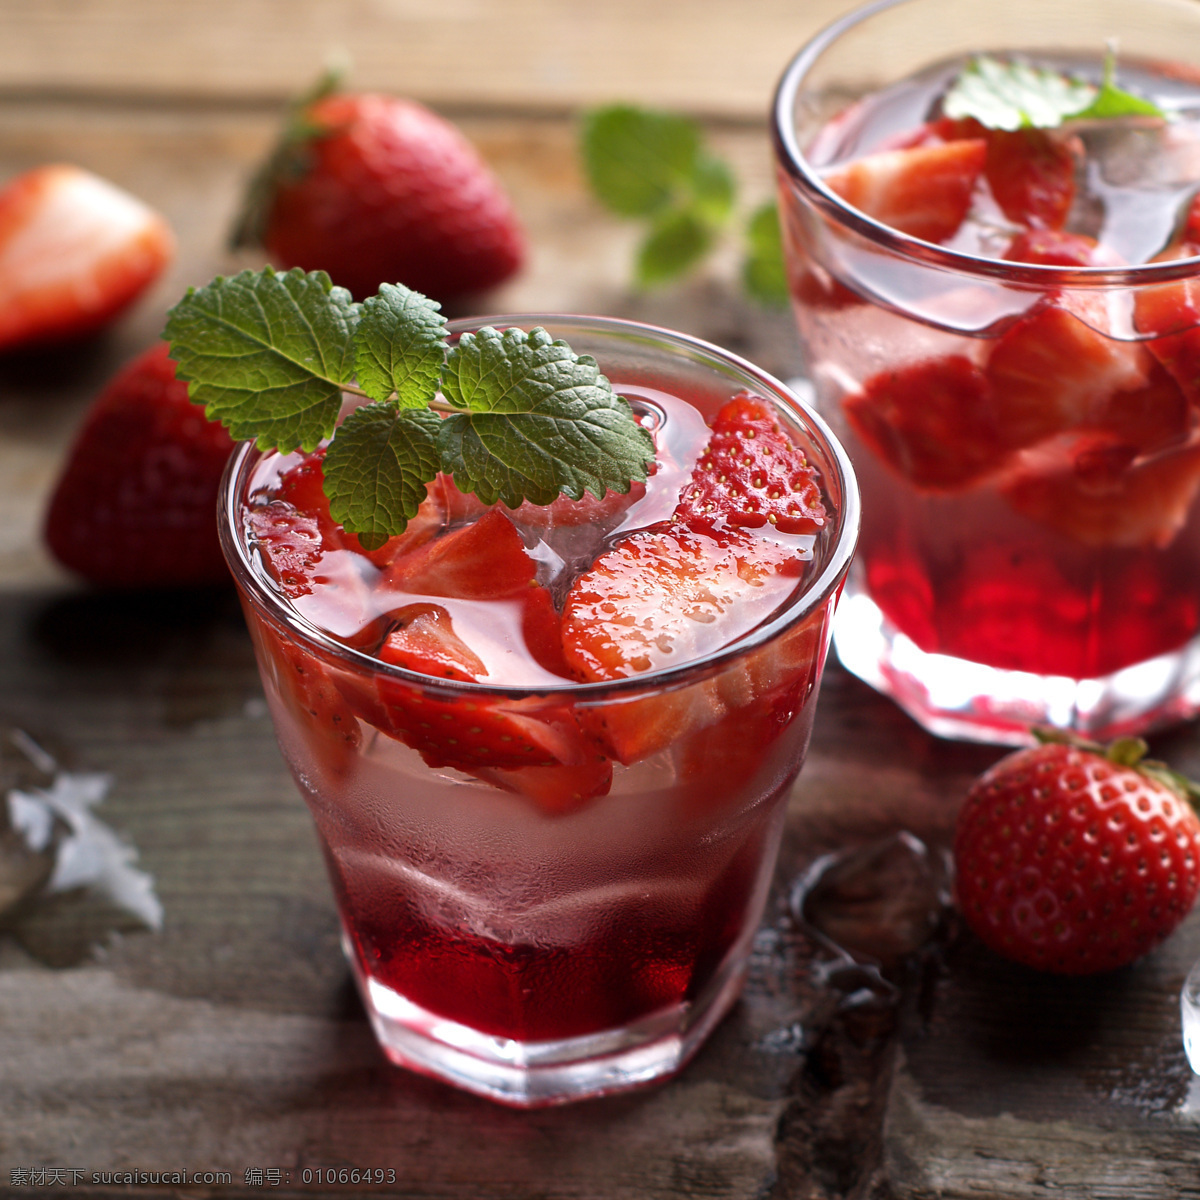 莫吉托 草莓 薄荷 冰饮 冷饮 草莓果汁 草莓鸡尾酒 水果酒 调酒 夏日 餐饮美食 饮料酒水